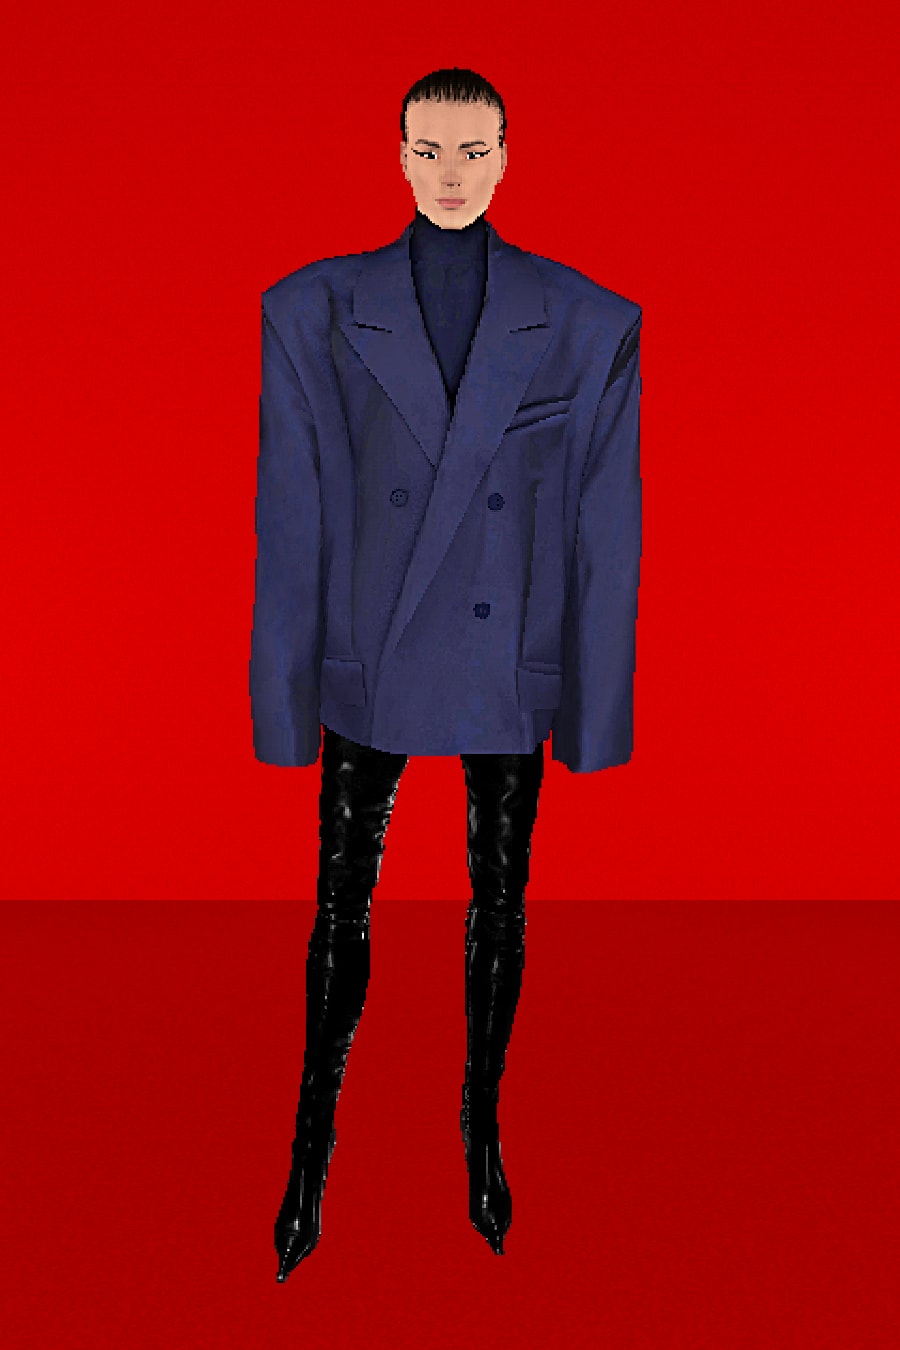 バレンシアガが2022年夏のキャンペーンビジュアルを発表 Balenciaga Spring/Summer 2022 SS22 Collection Runway Red Carpet Campaign CGI Claudia Mate 3D Avatars XX Triplet Cagole Hourglass Demna Gvasalia